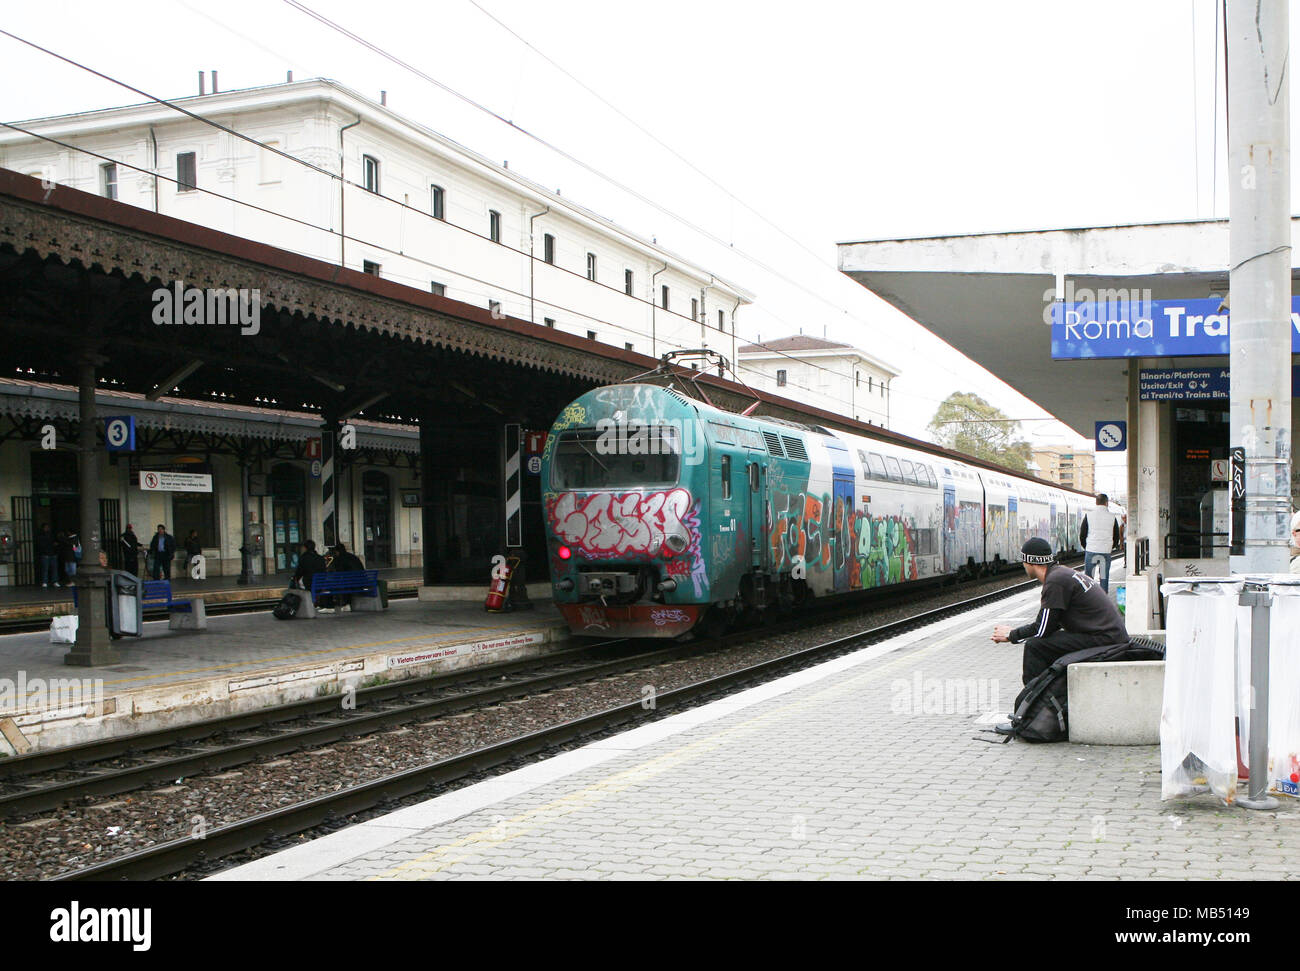 Passagers attendant le cororful train à la gare de Trastevere, Rome, Italie Banque D'Images